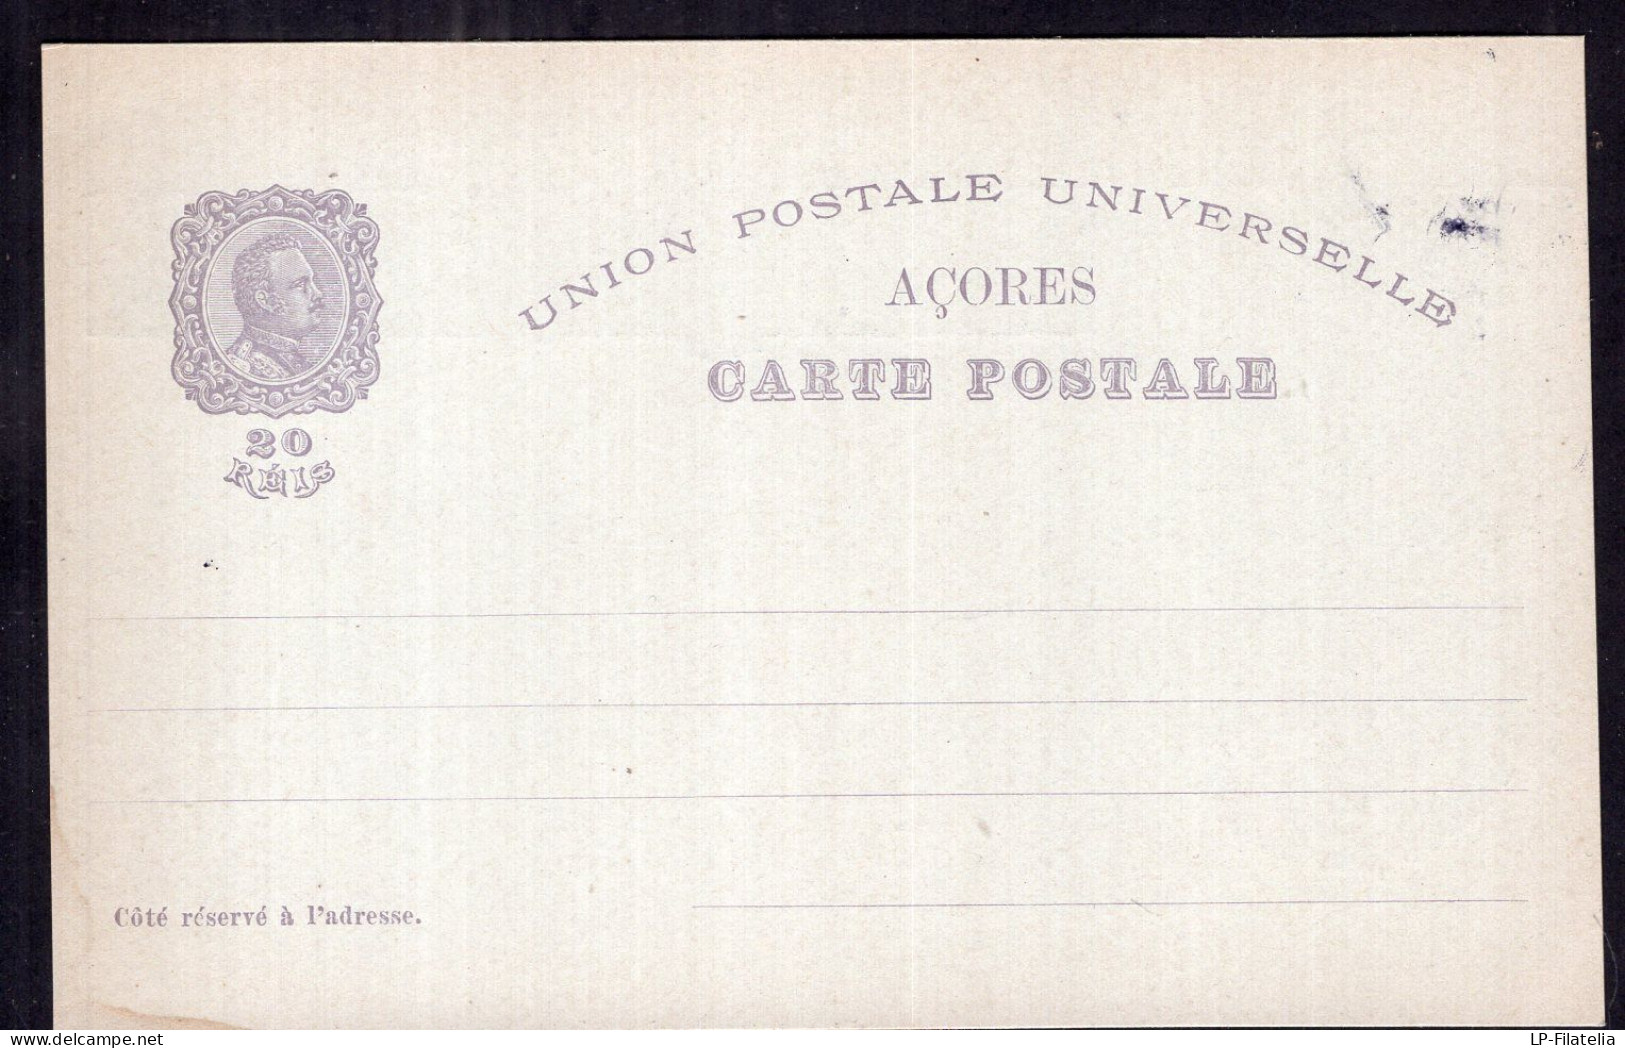 Portugal - 1898 - Carte Postale - Centenario Da India - 1498-1898 - Portuguese India